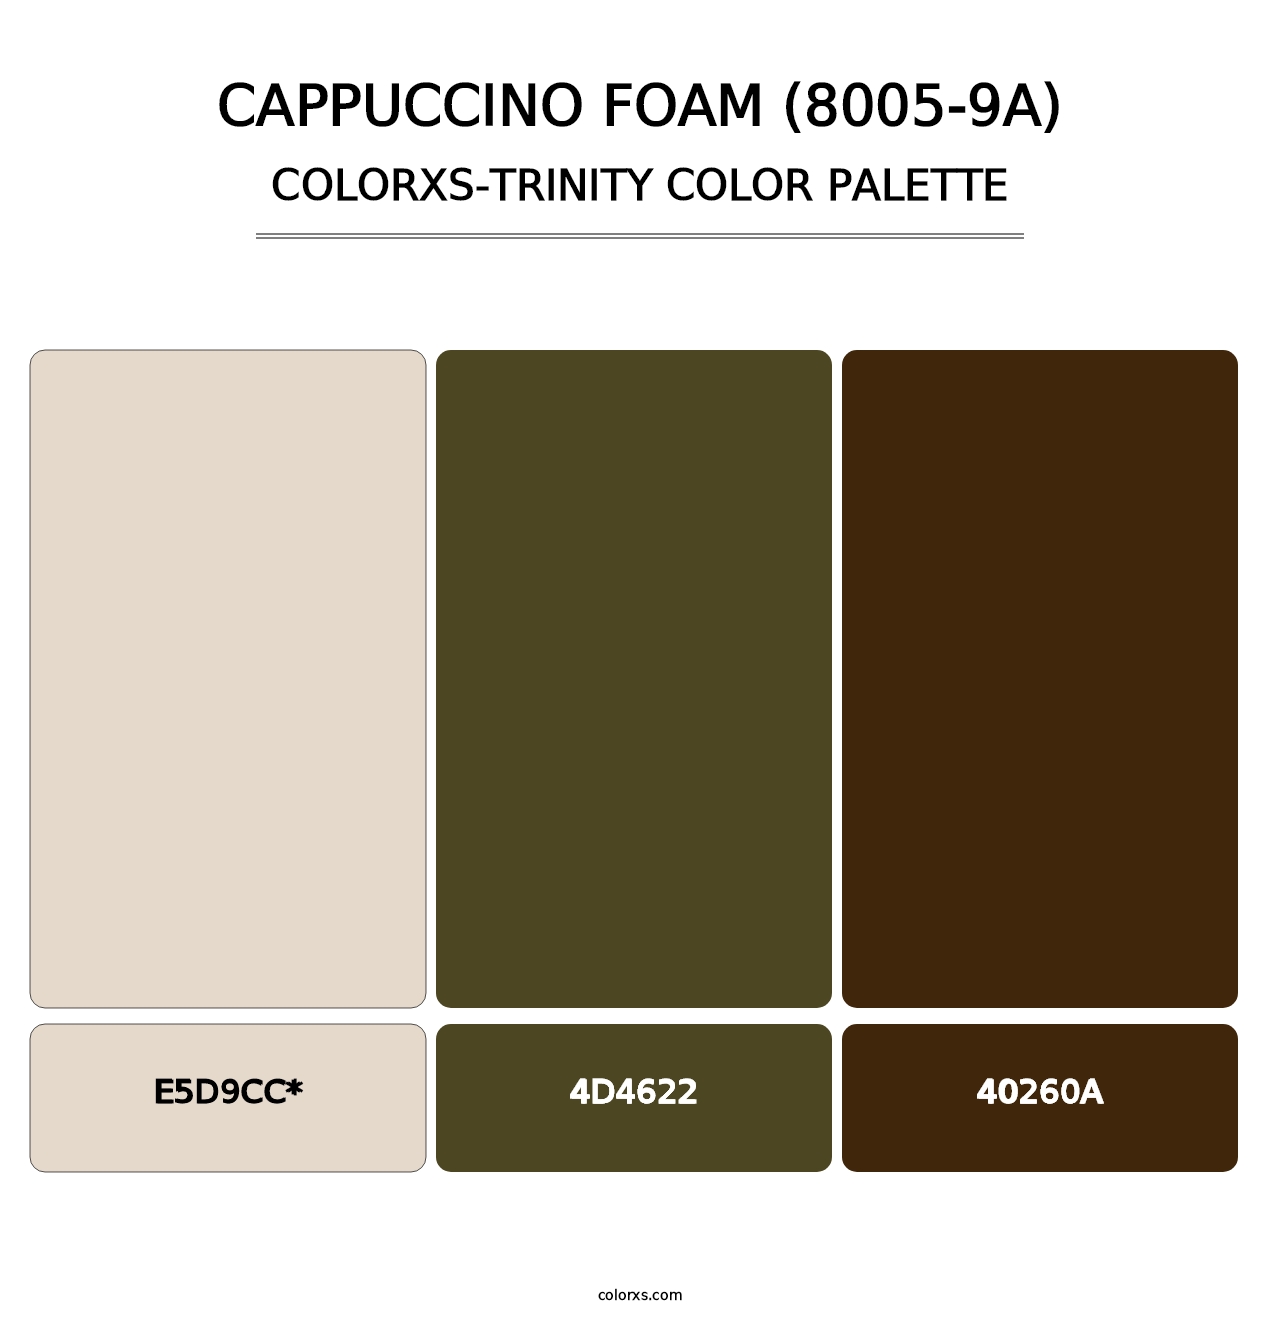 Cappuccino Foam (8005-9A) - Colorxs Trinity Palette